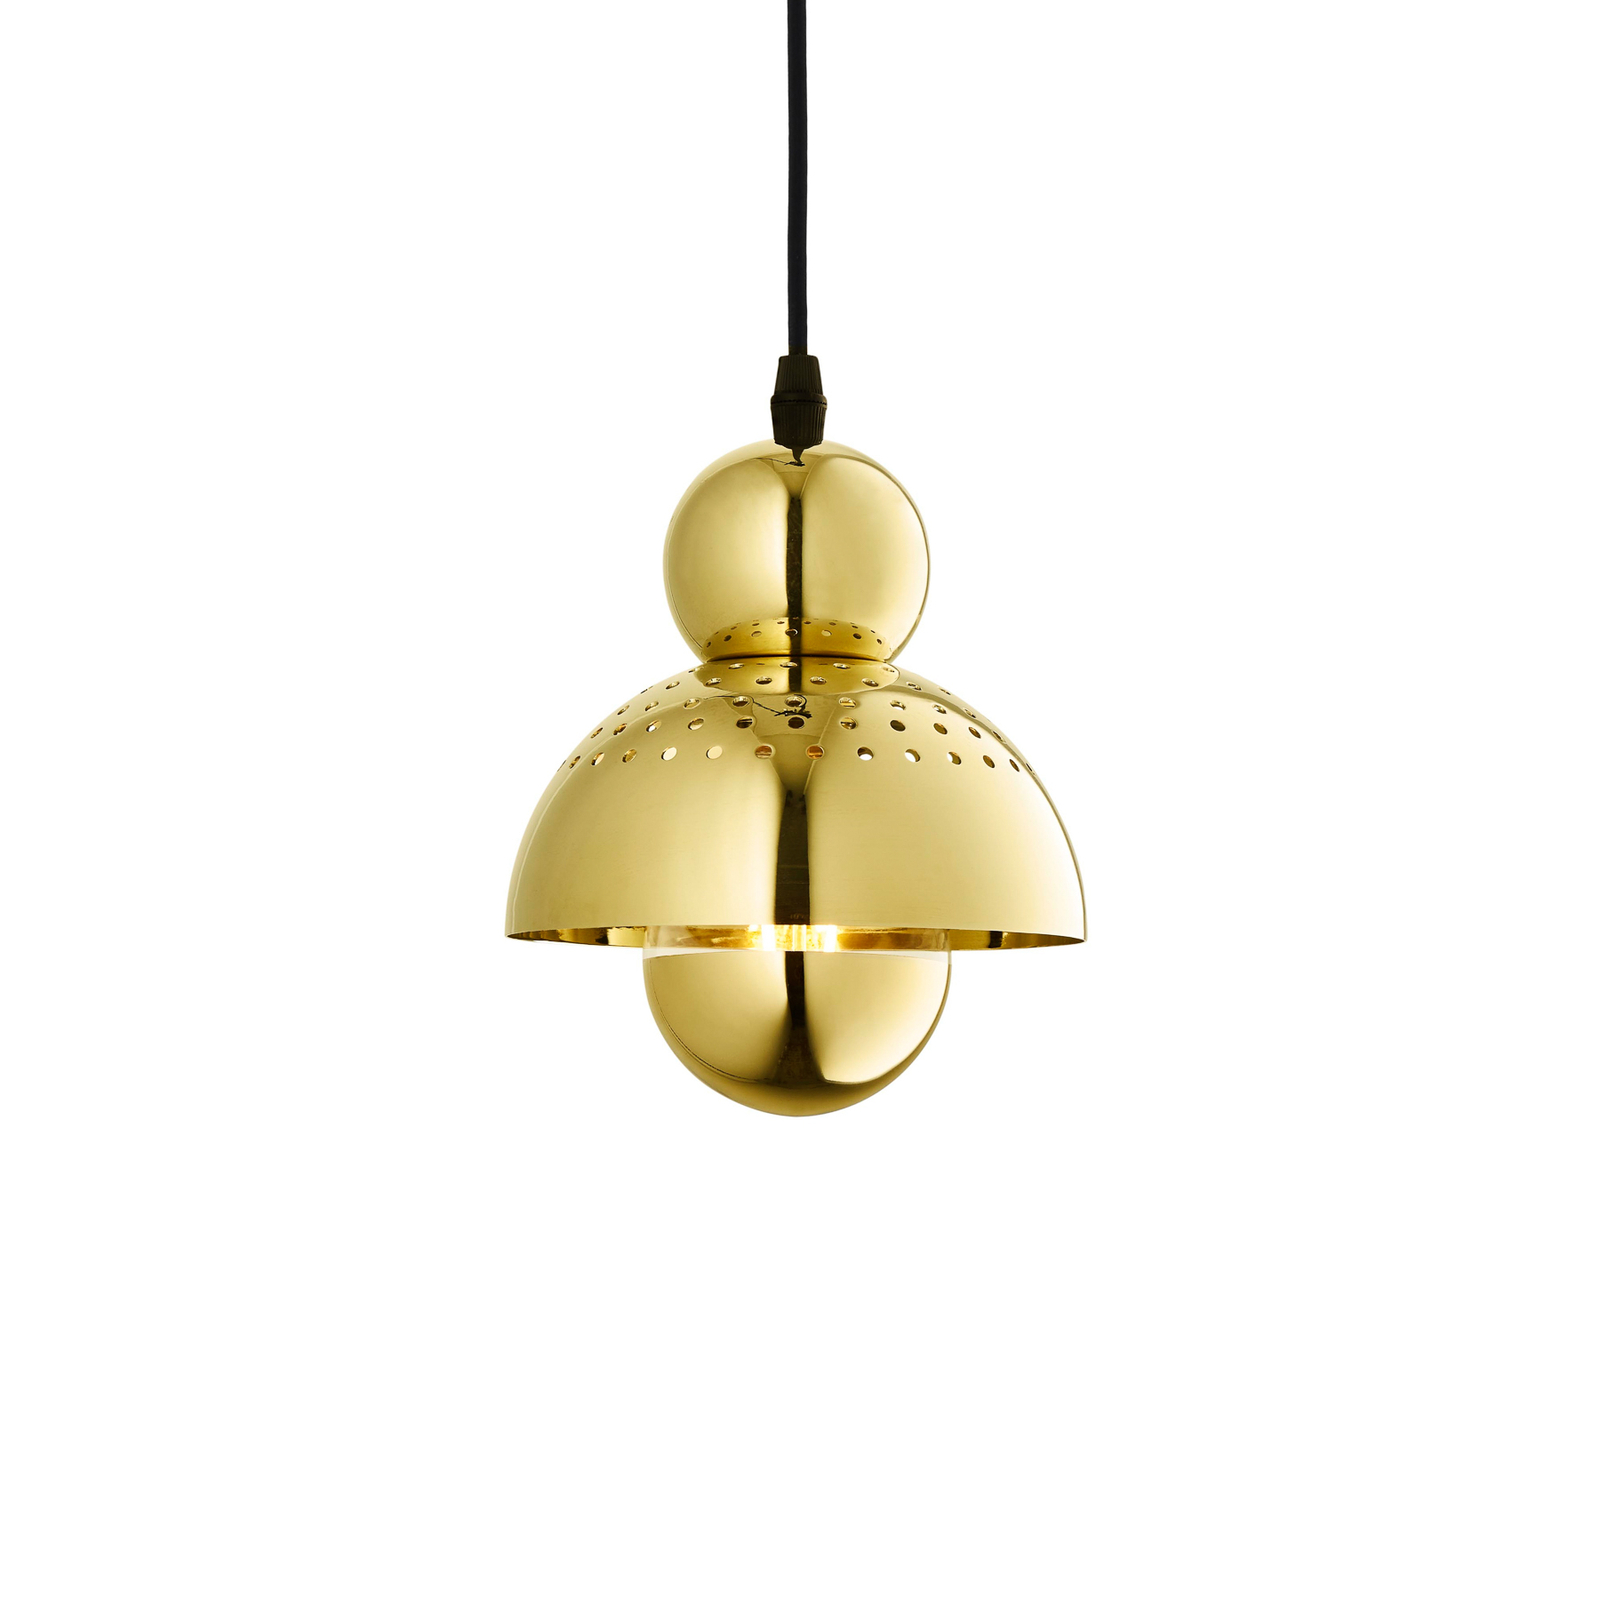 Hanglamp XS gezocht, goudkleurig, ijzer, Ø 15 cm